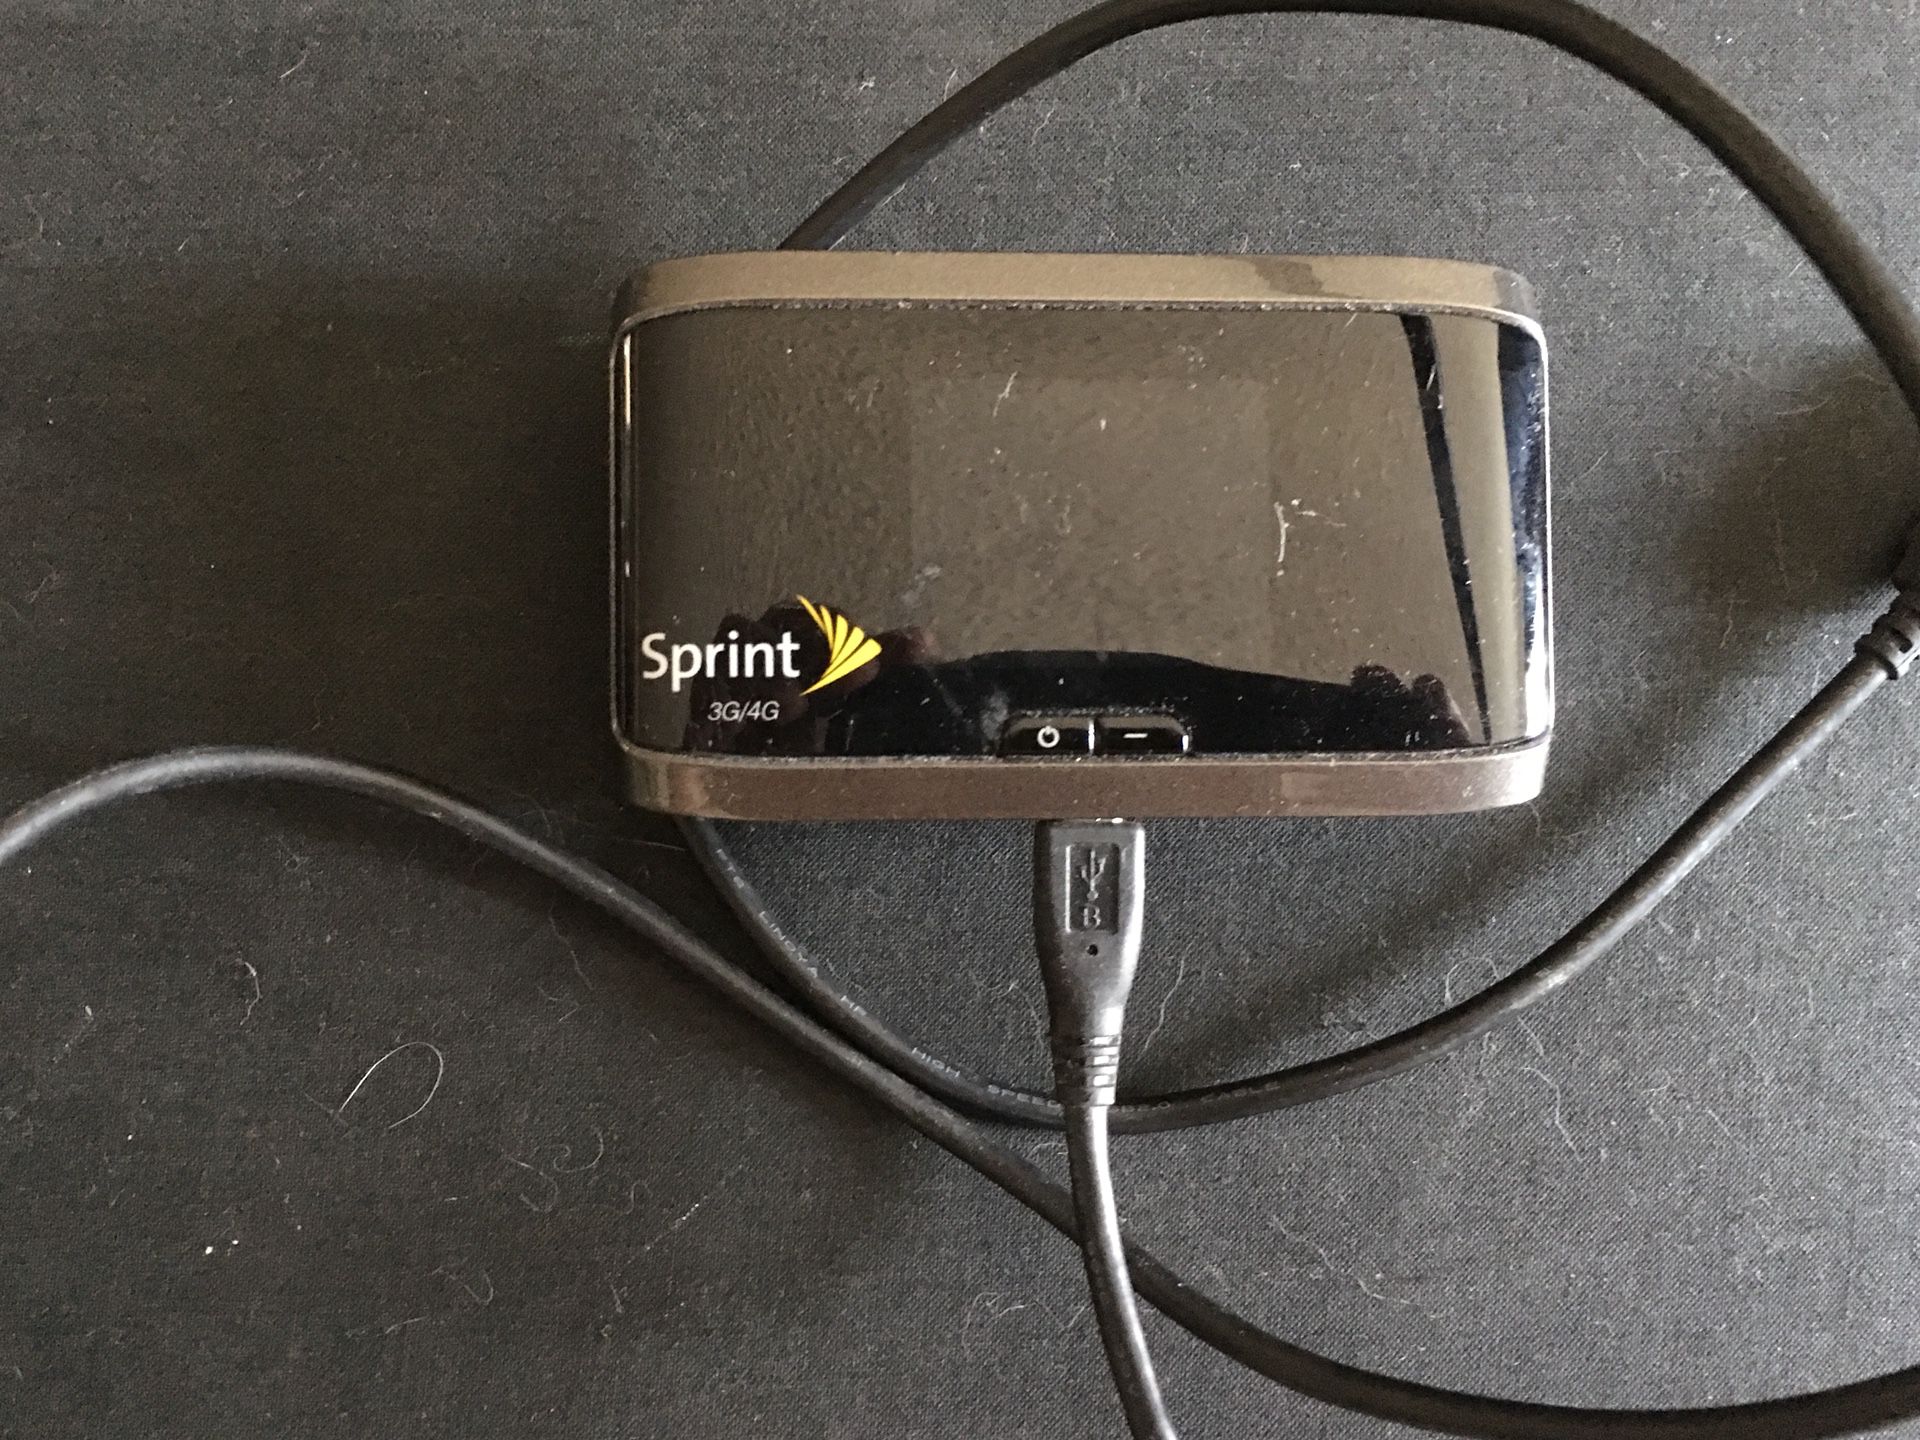 Sprint WiFi hotspot